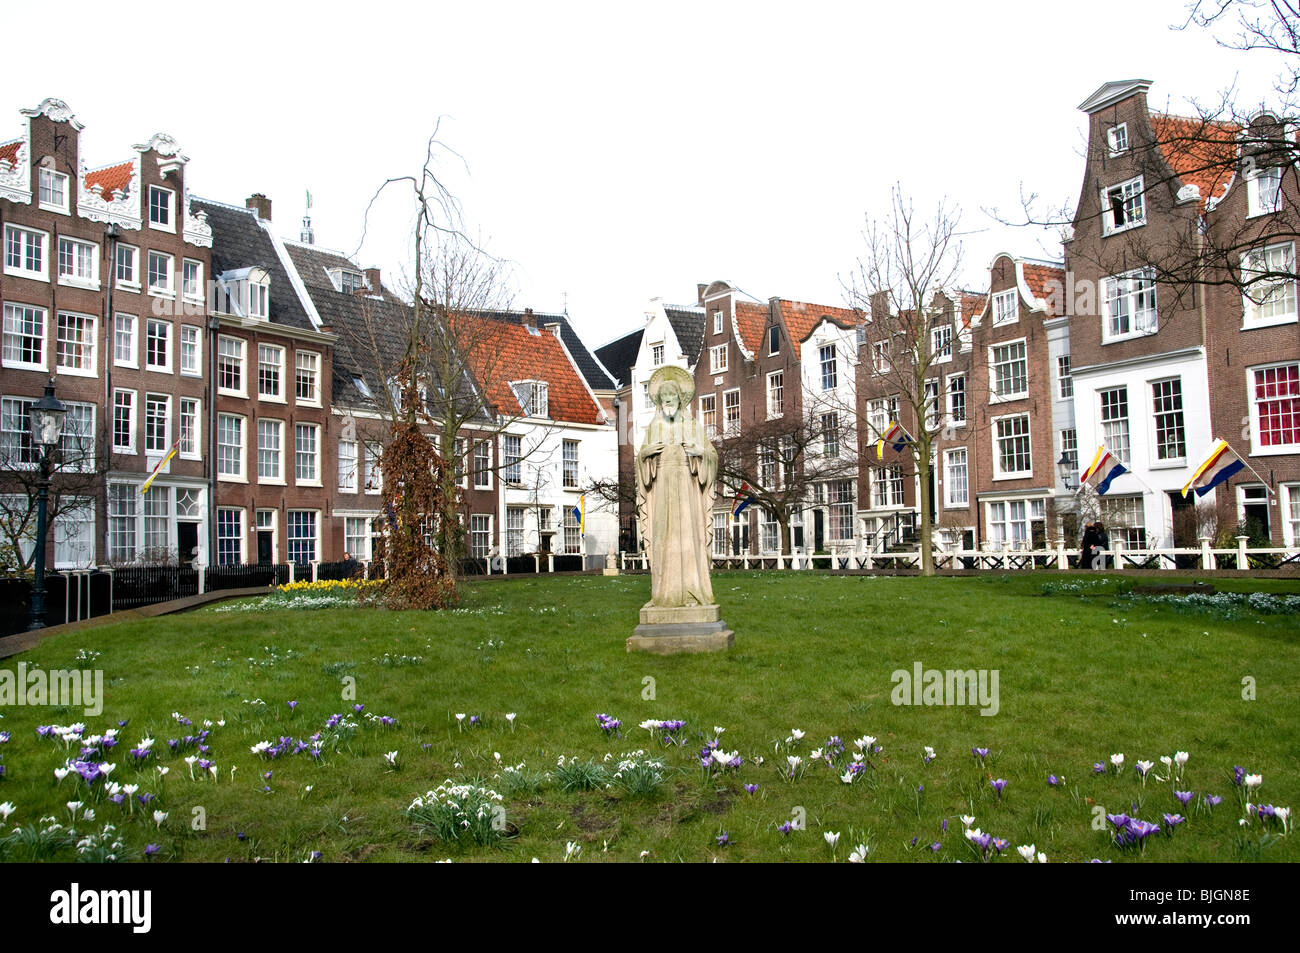 Begijnhof è una delle più antiche corti interne Amsterdam Paesi Bassi Olanda oggi è anche il sito della Chiesa riformata inglese. Foto Stock